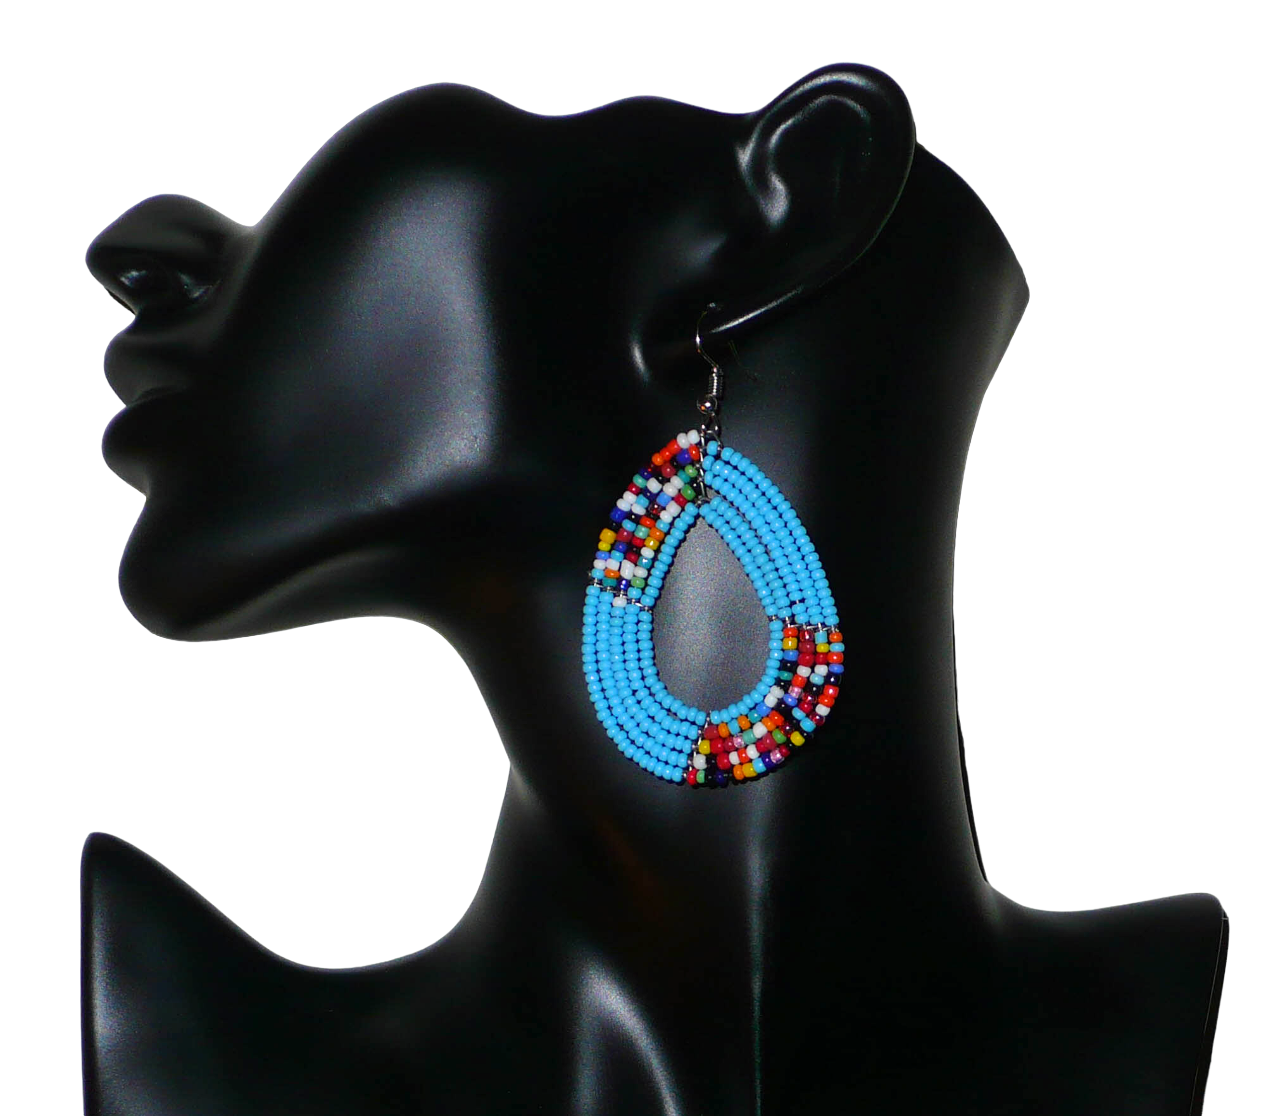 Boucles d'oreilles bleu ciel et multicolore composées de perles de rocaille enfilées sur cinq rangées de fils de fer montés en forme de gouttes. Elles mesurent 7 cm de long et 4 cm de large et se portent sur des oreilles percées.